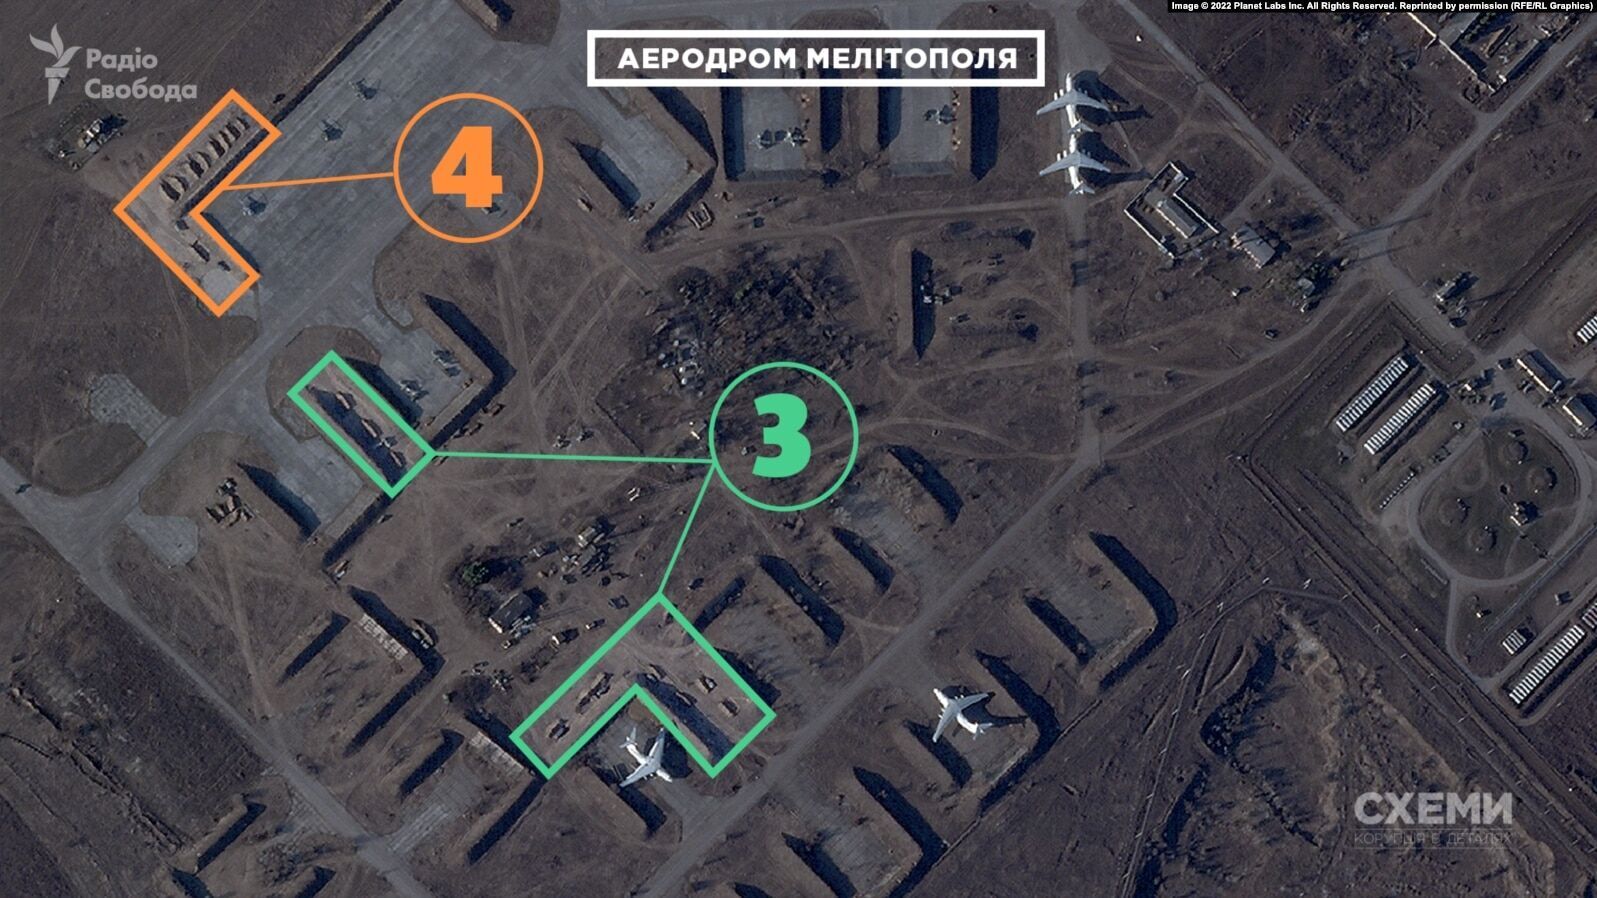 СМИ выяснили, какую технику РФ уничтожили украинские защитники на аэродроме в Мелитополе. Спутниковые фото